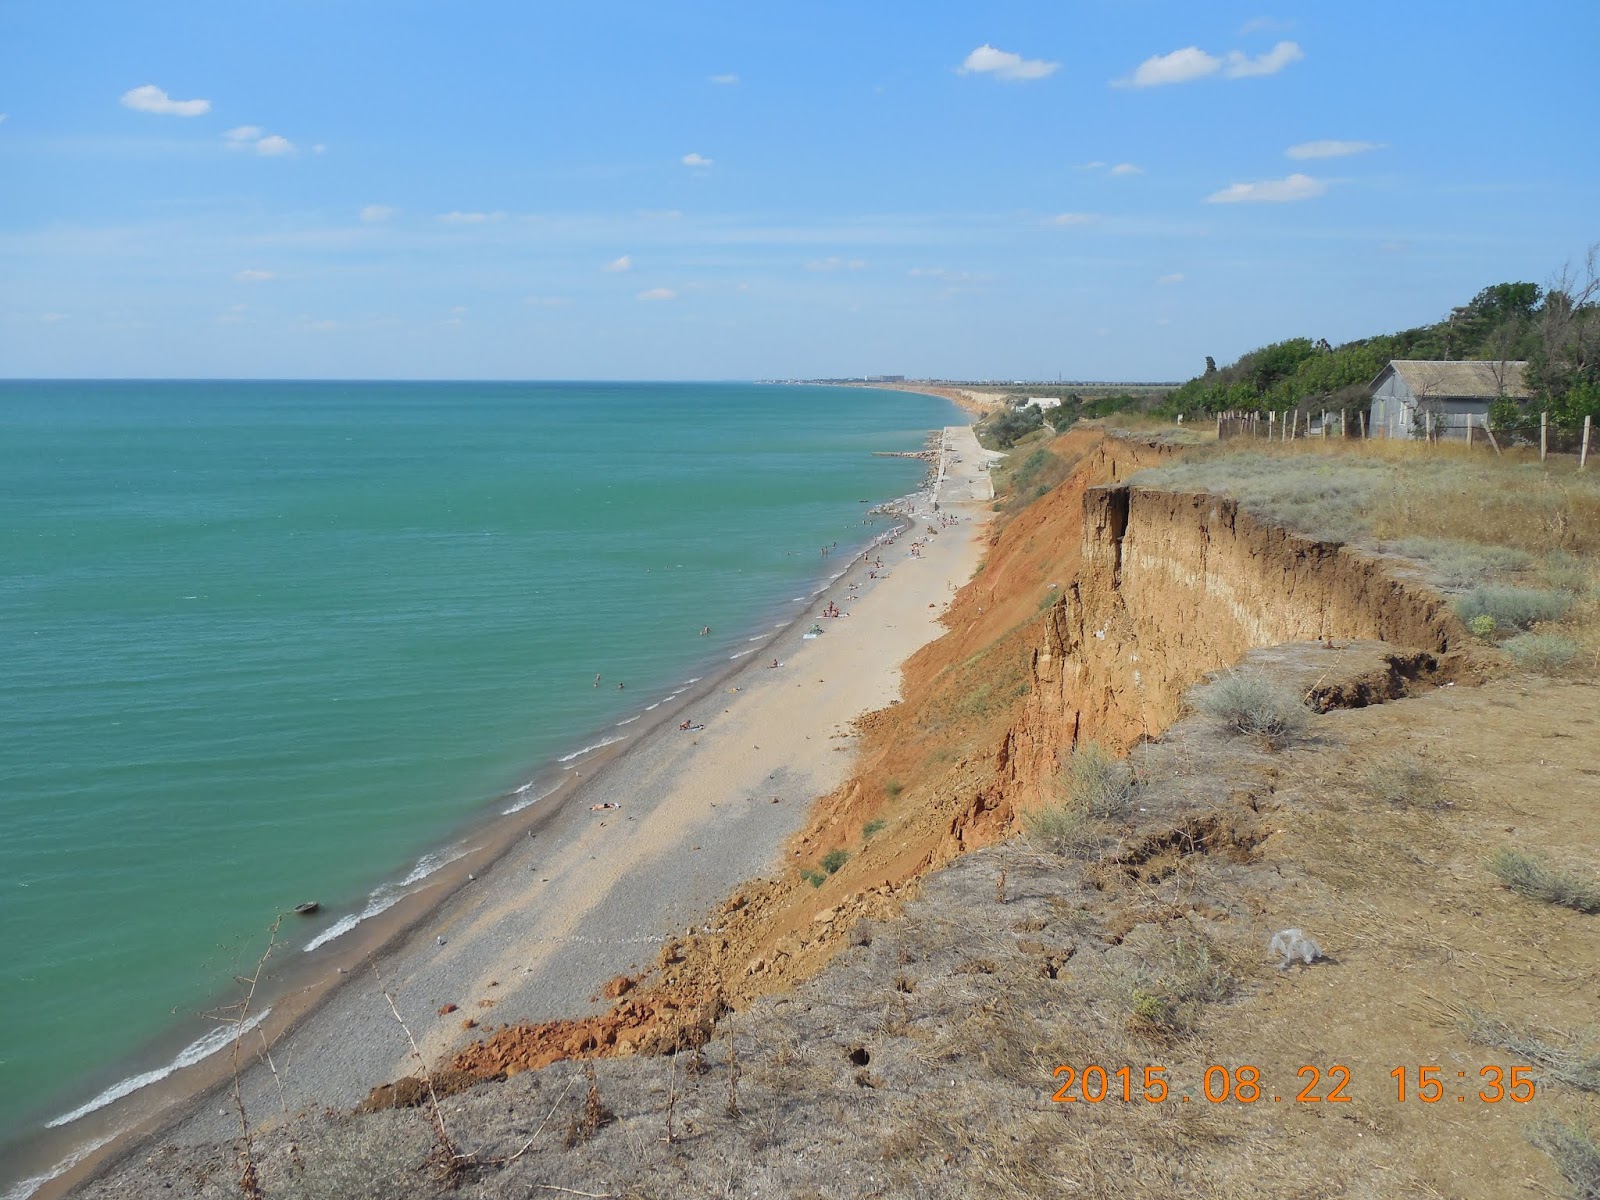 Fotografija Beregovoe beach z turkizna voda površino